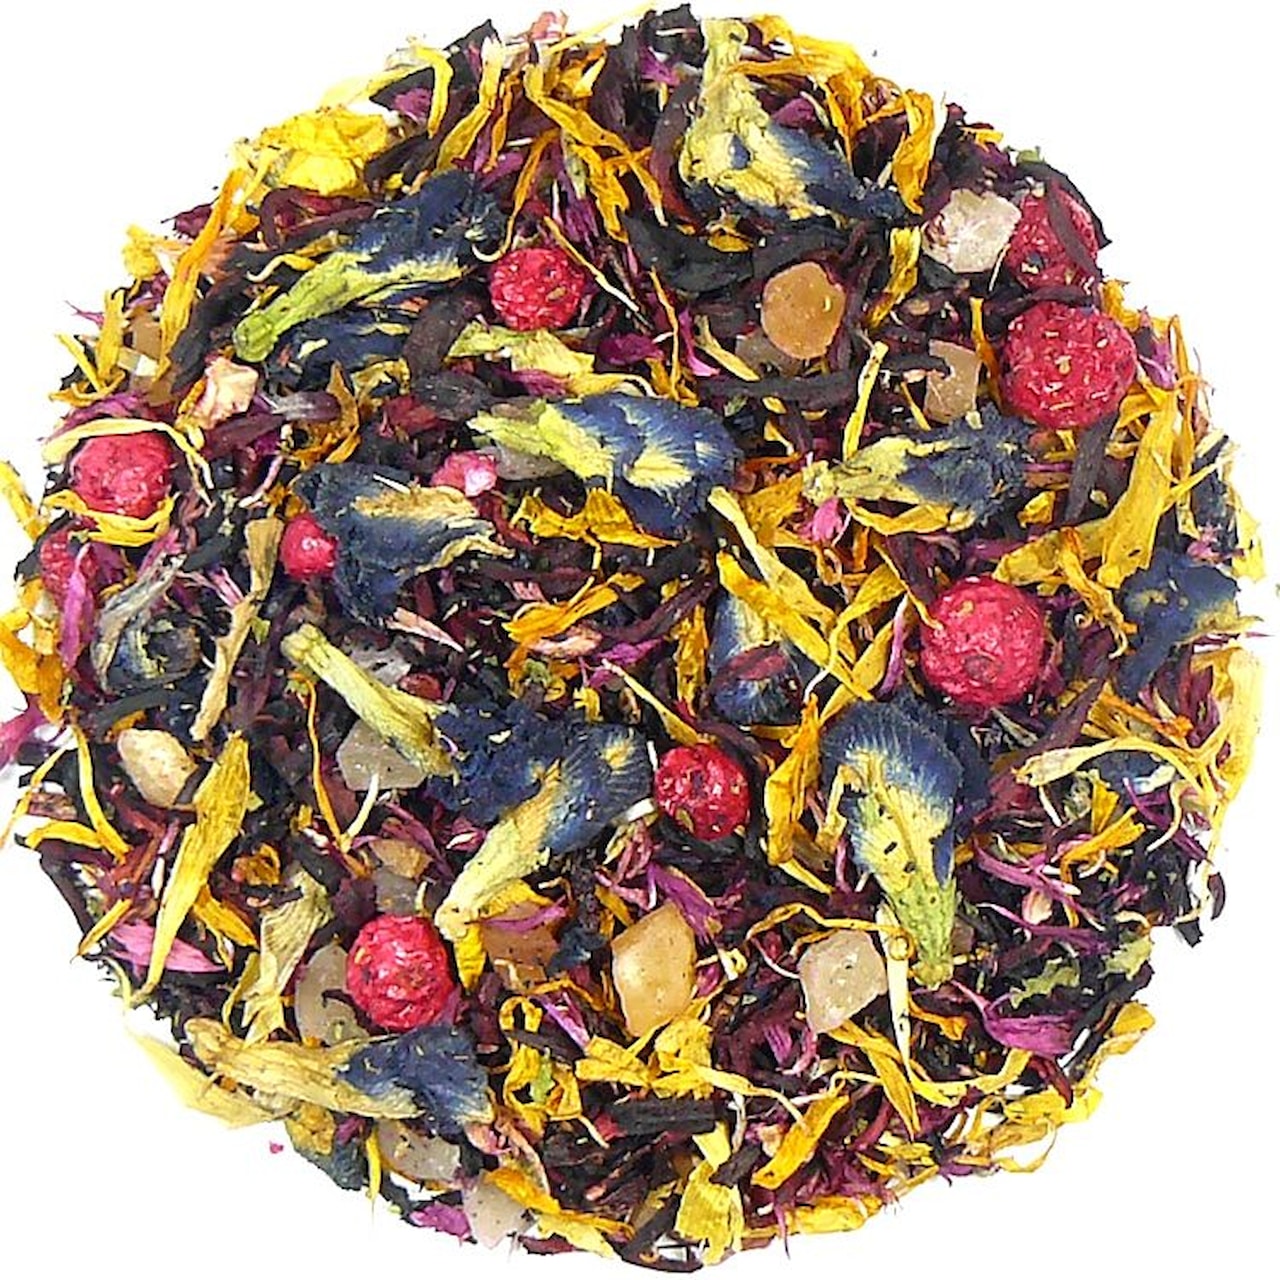 Purpurové Slunce - ovocný čaj, balení 1 kg